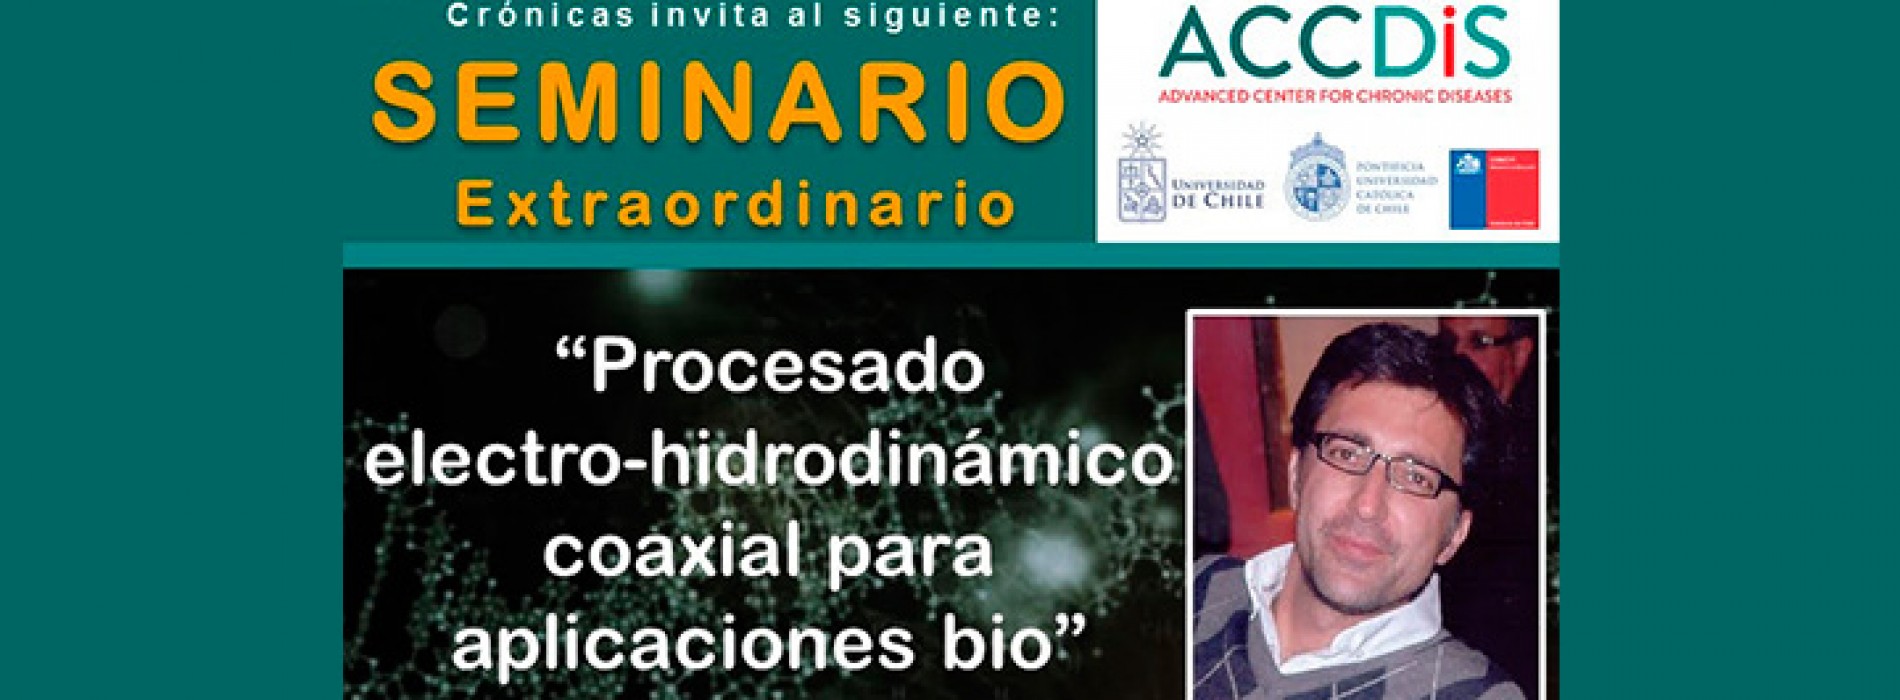 Seminario Extraordinario ACCDIS “Procesado electro-hidrodinámico coaxial para aplicaciones bio”